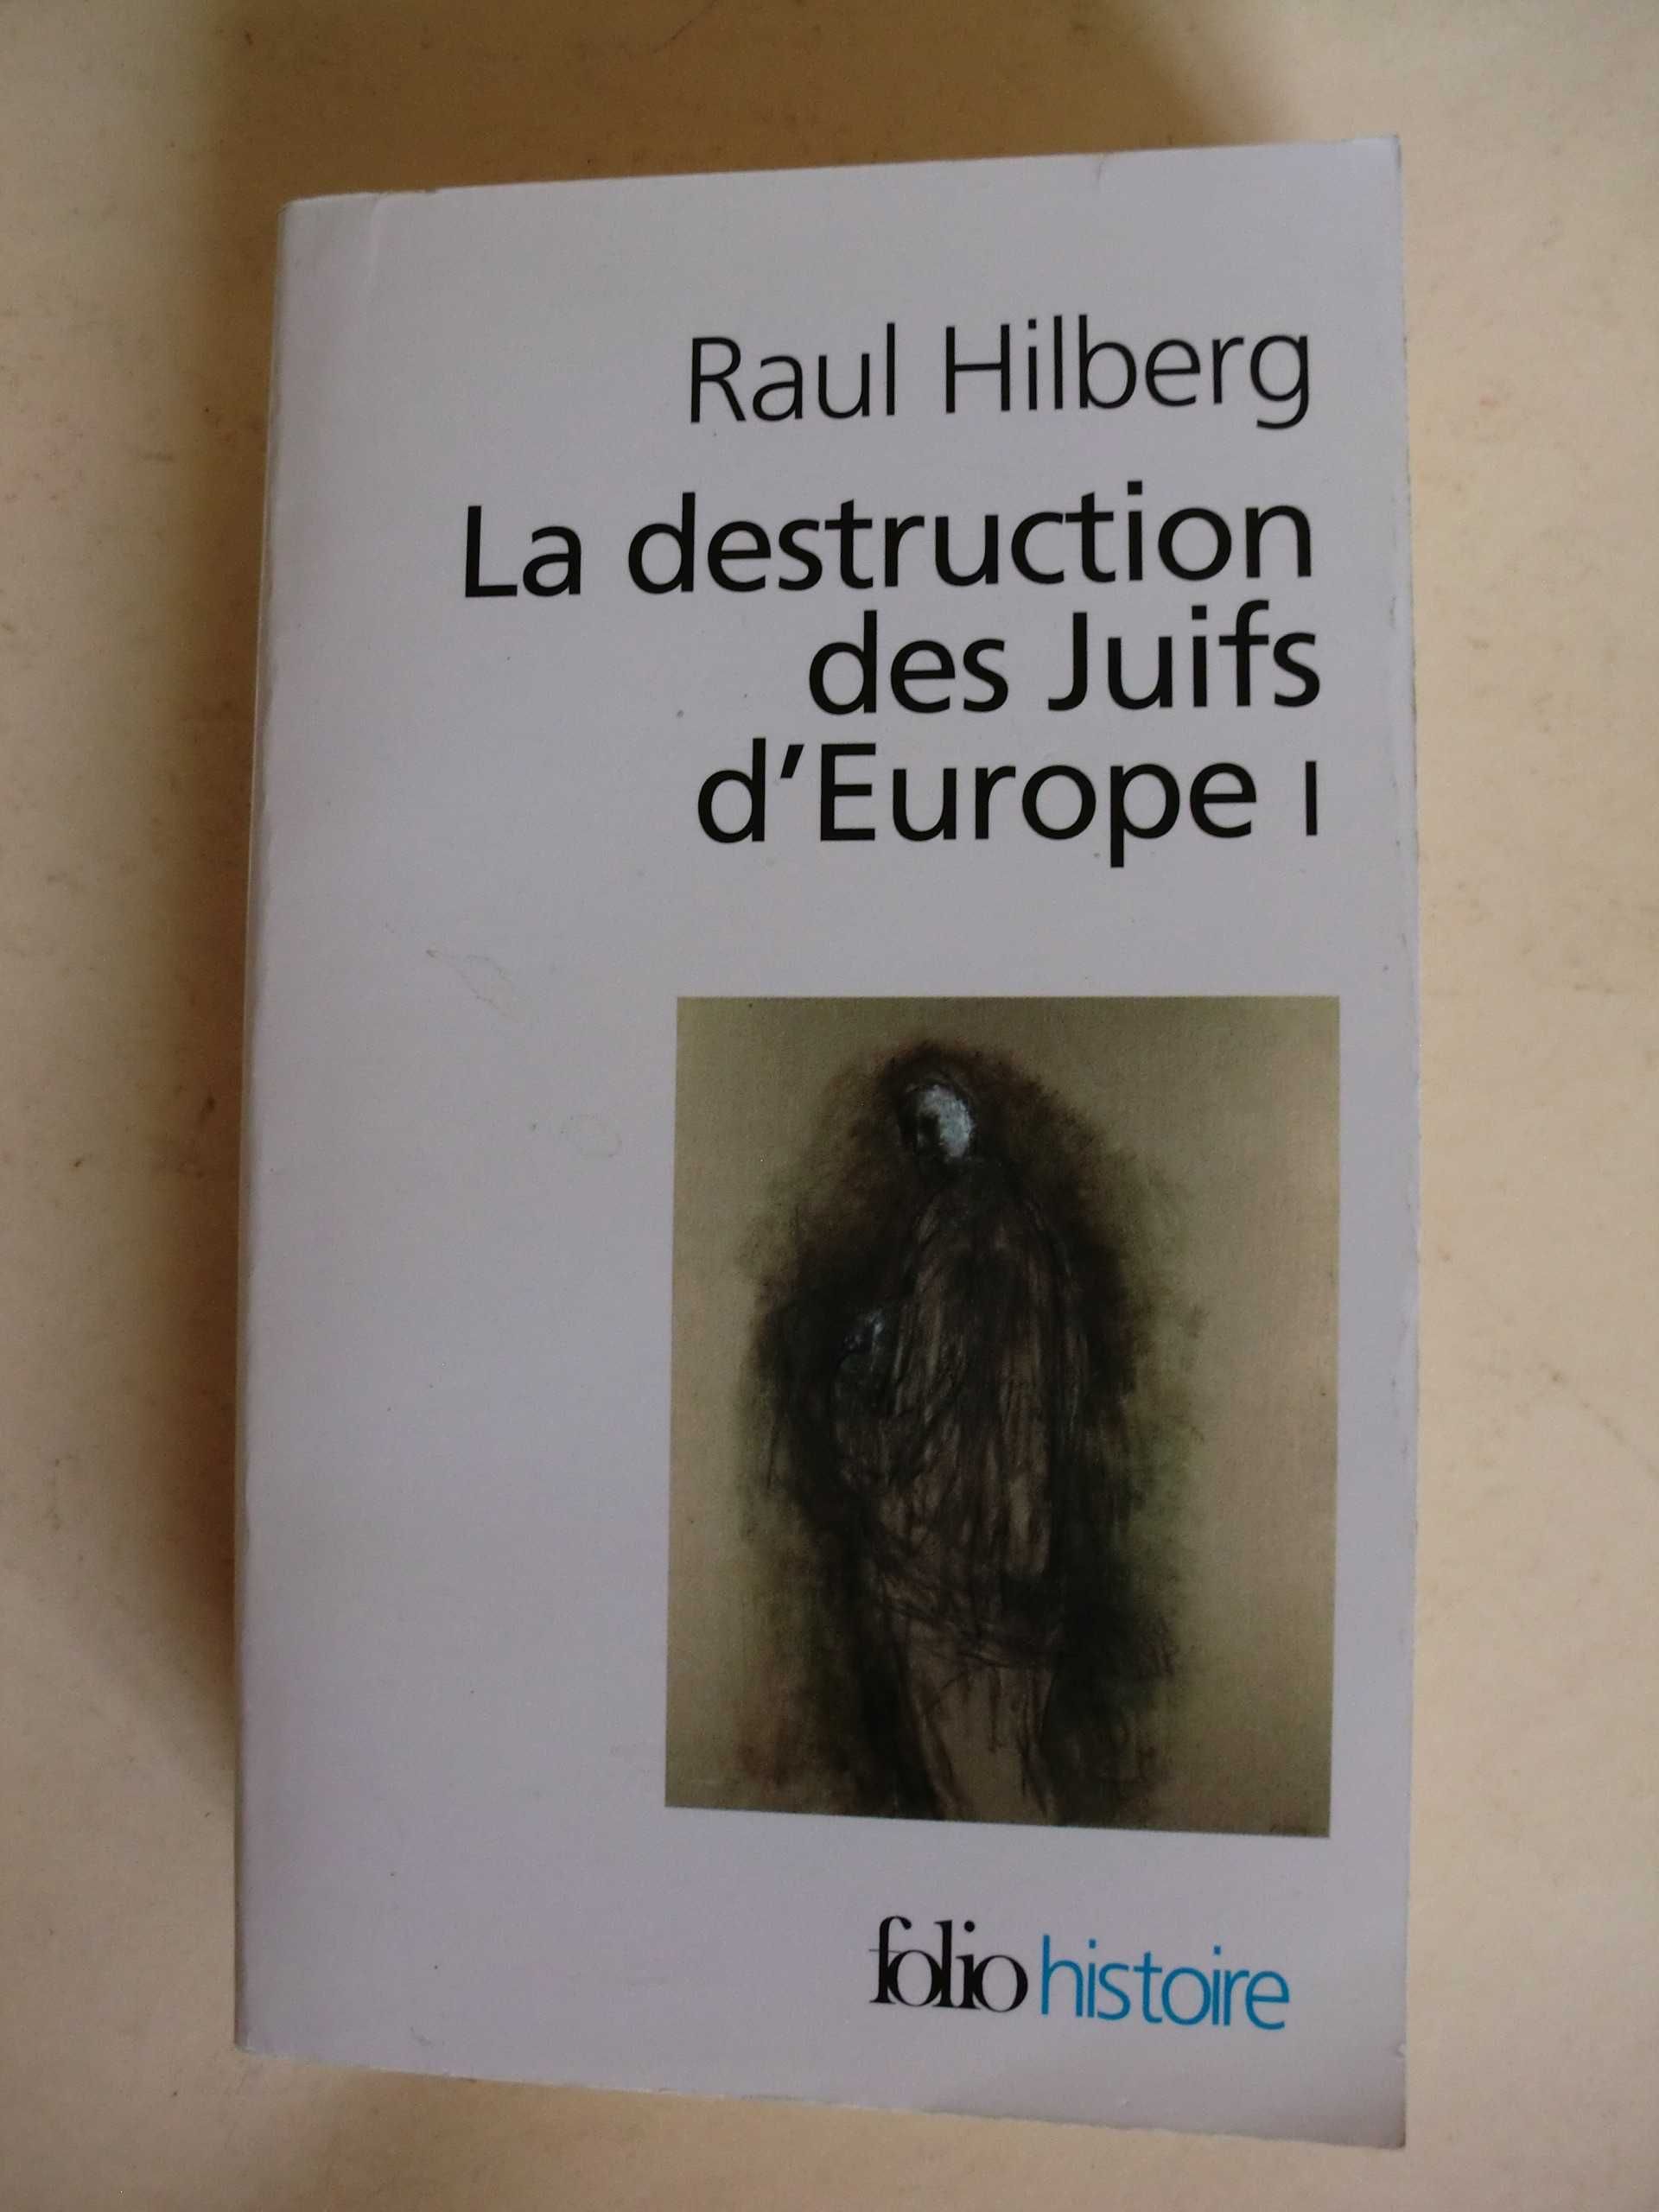 La destruiction des Juifs d´Europe I
de Raul Hilberg